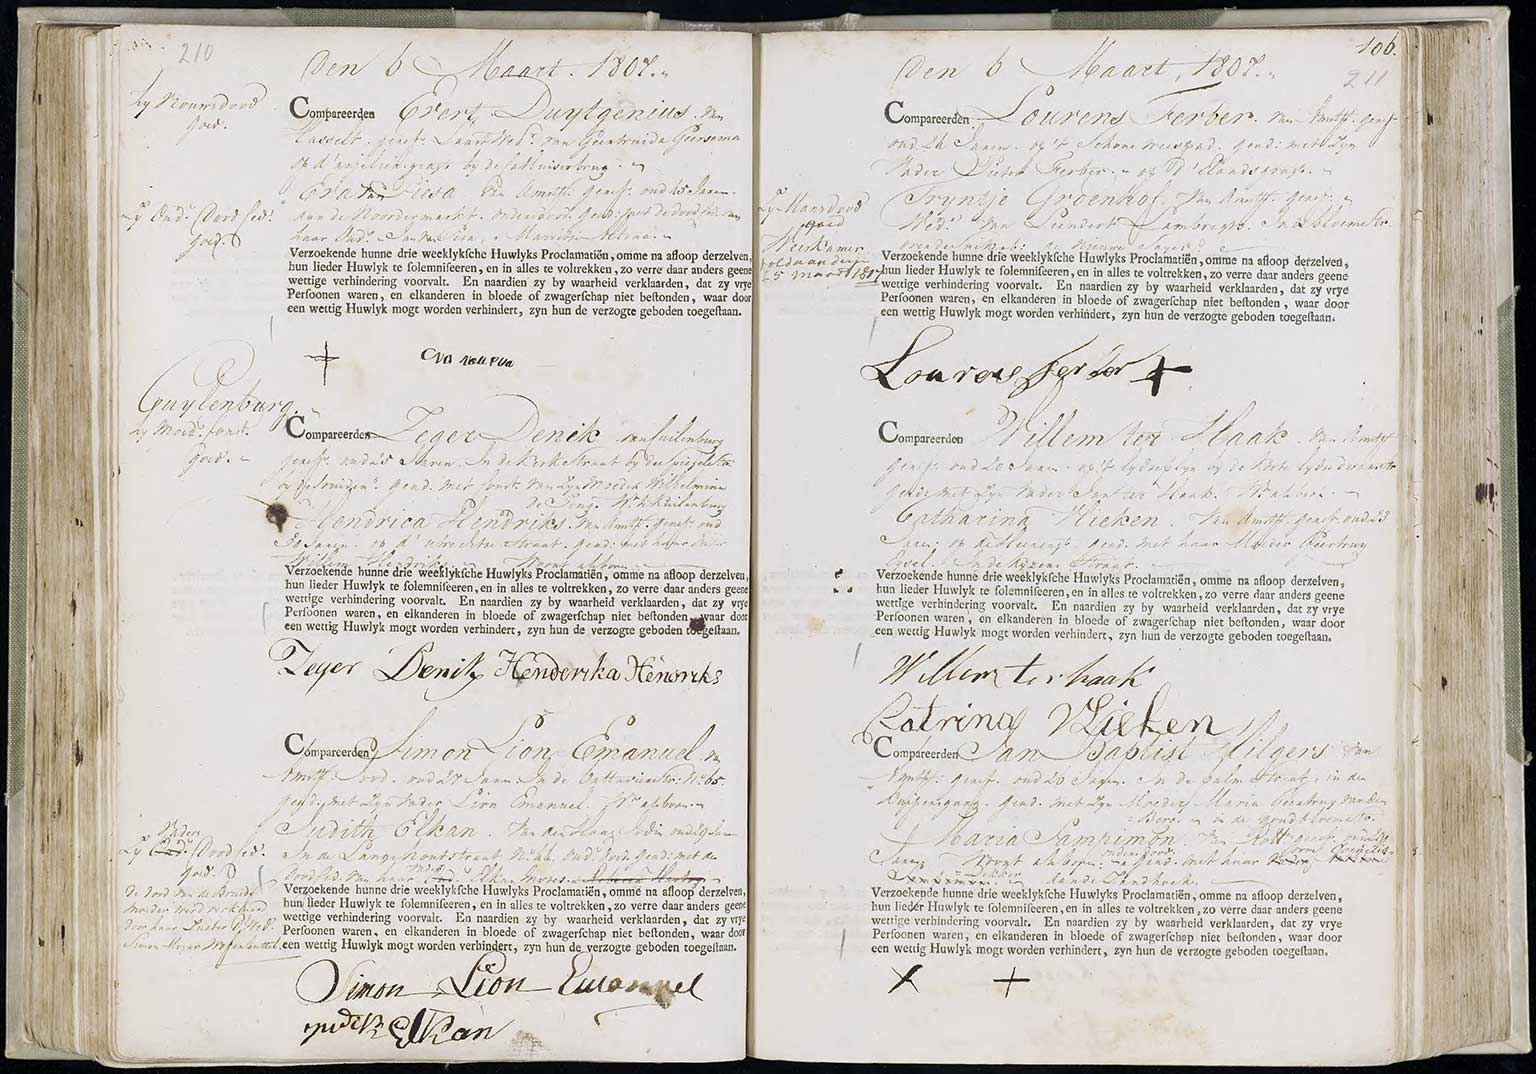 Registration of intended marriage in 1807, between Zeger Deenik and Hendrika Henriks, Amsterdam